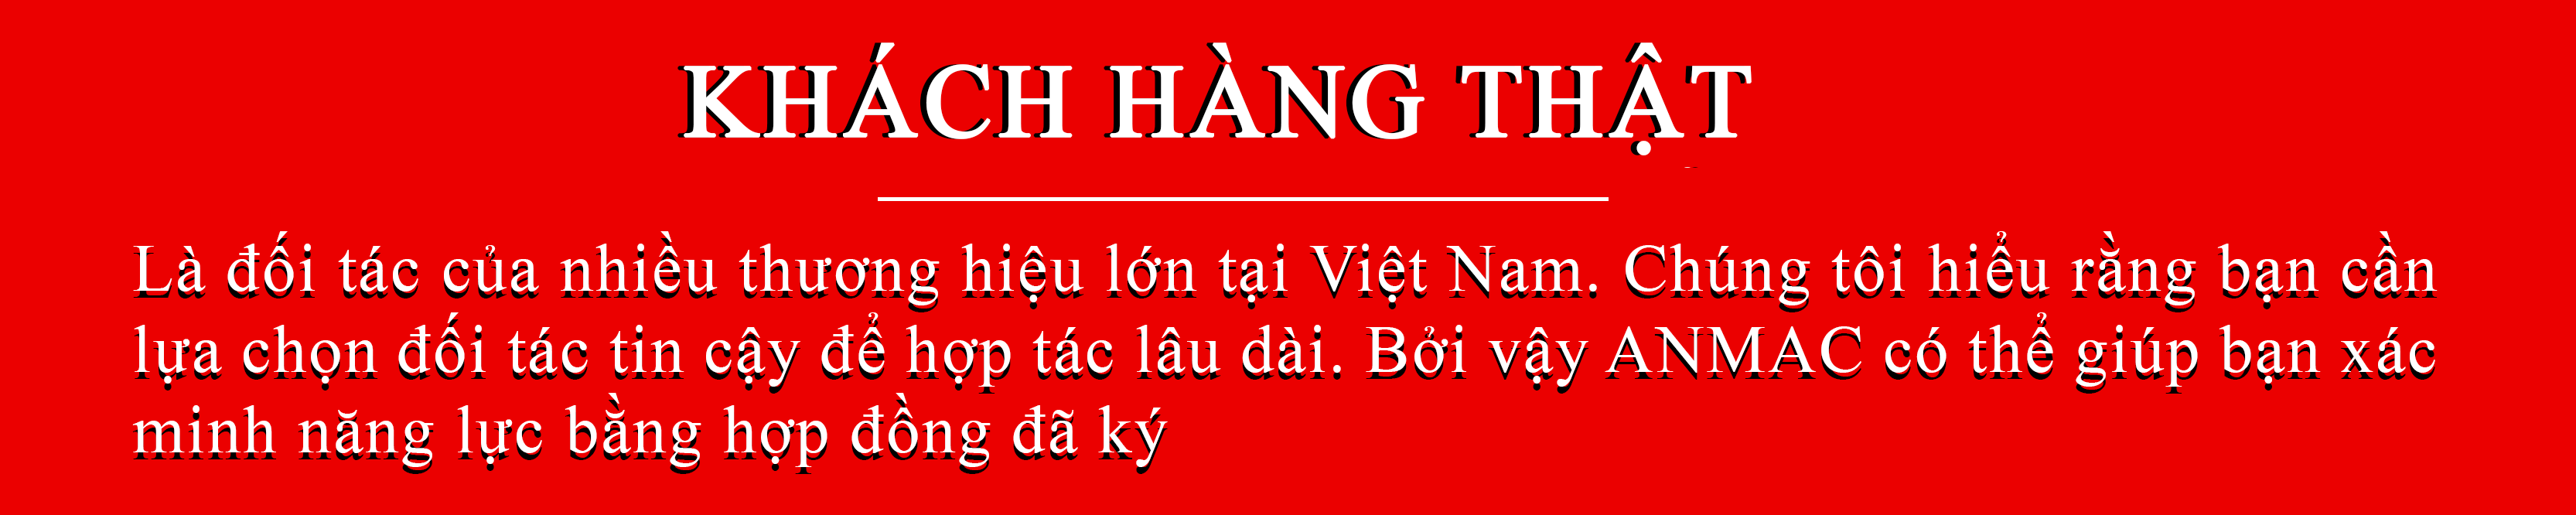 Khách hàng thật của đồng phục Anmac Việt Nam